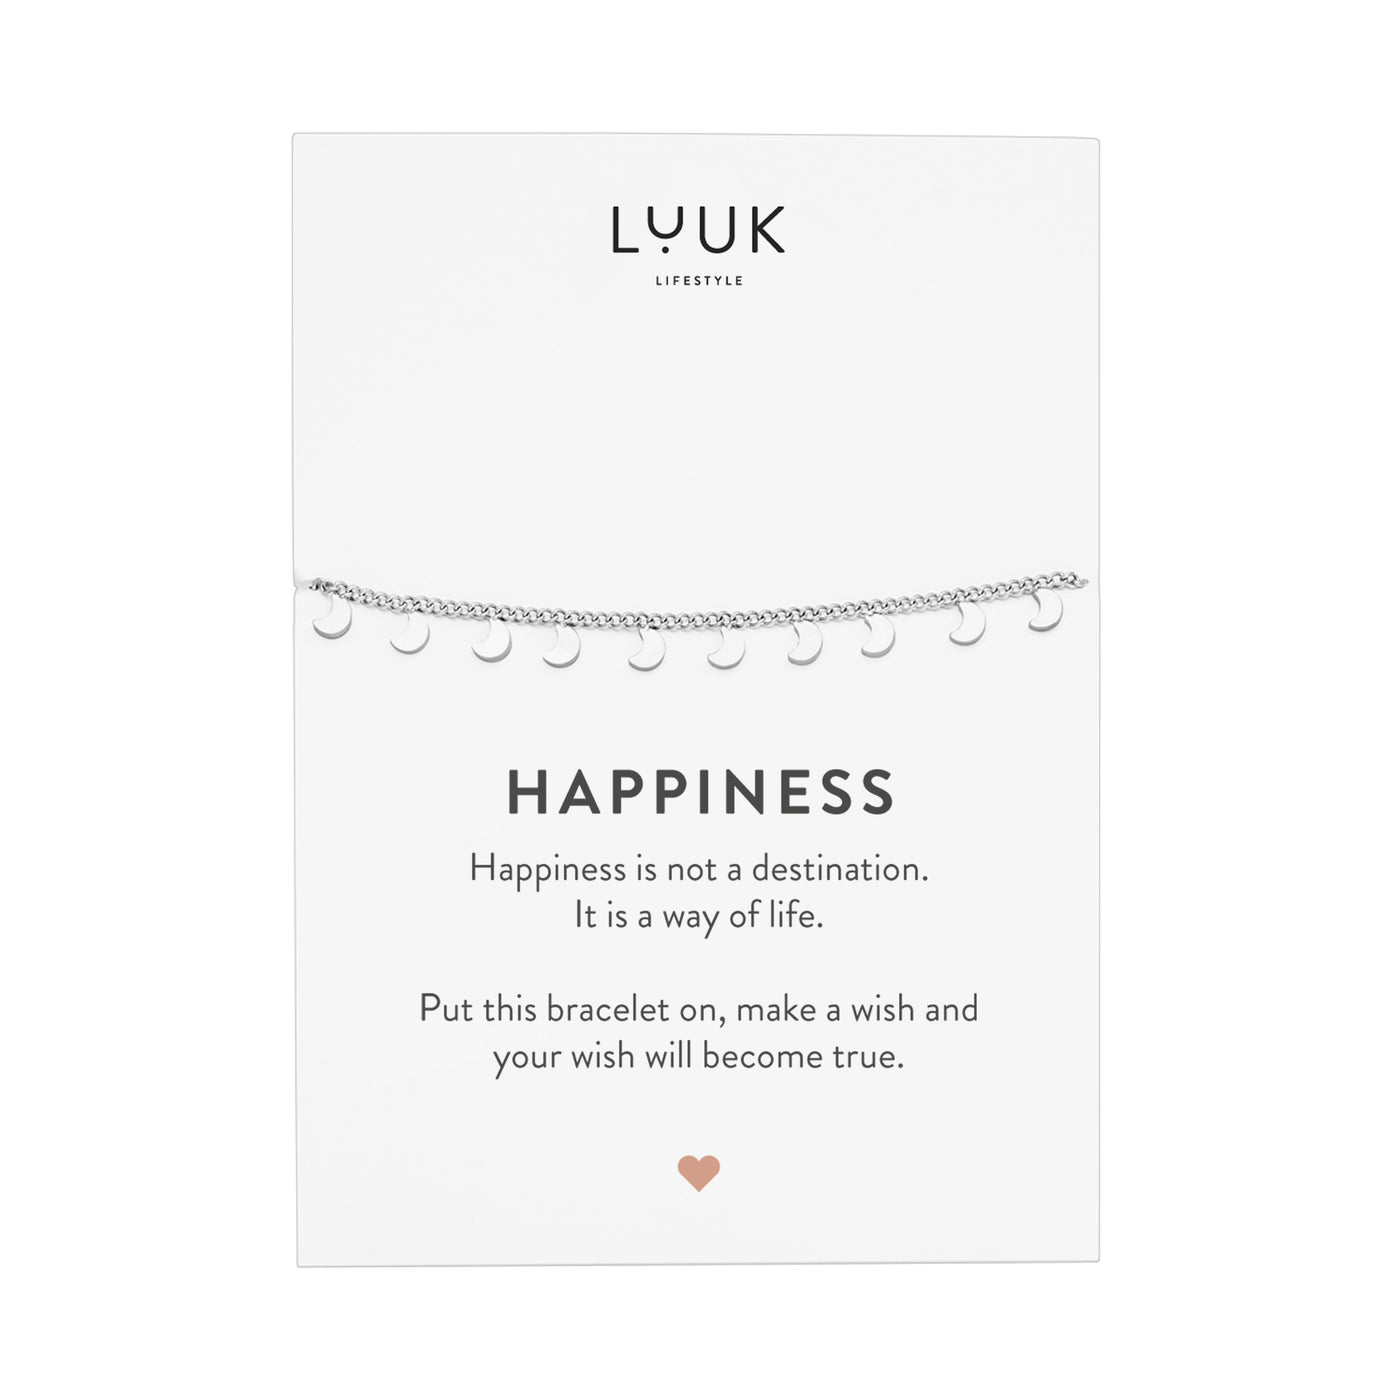 Silbernes Armband mit kleinen Mond Anhängern auf Happiness Spruchkarte von der Marke Luuk Lifestyle